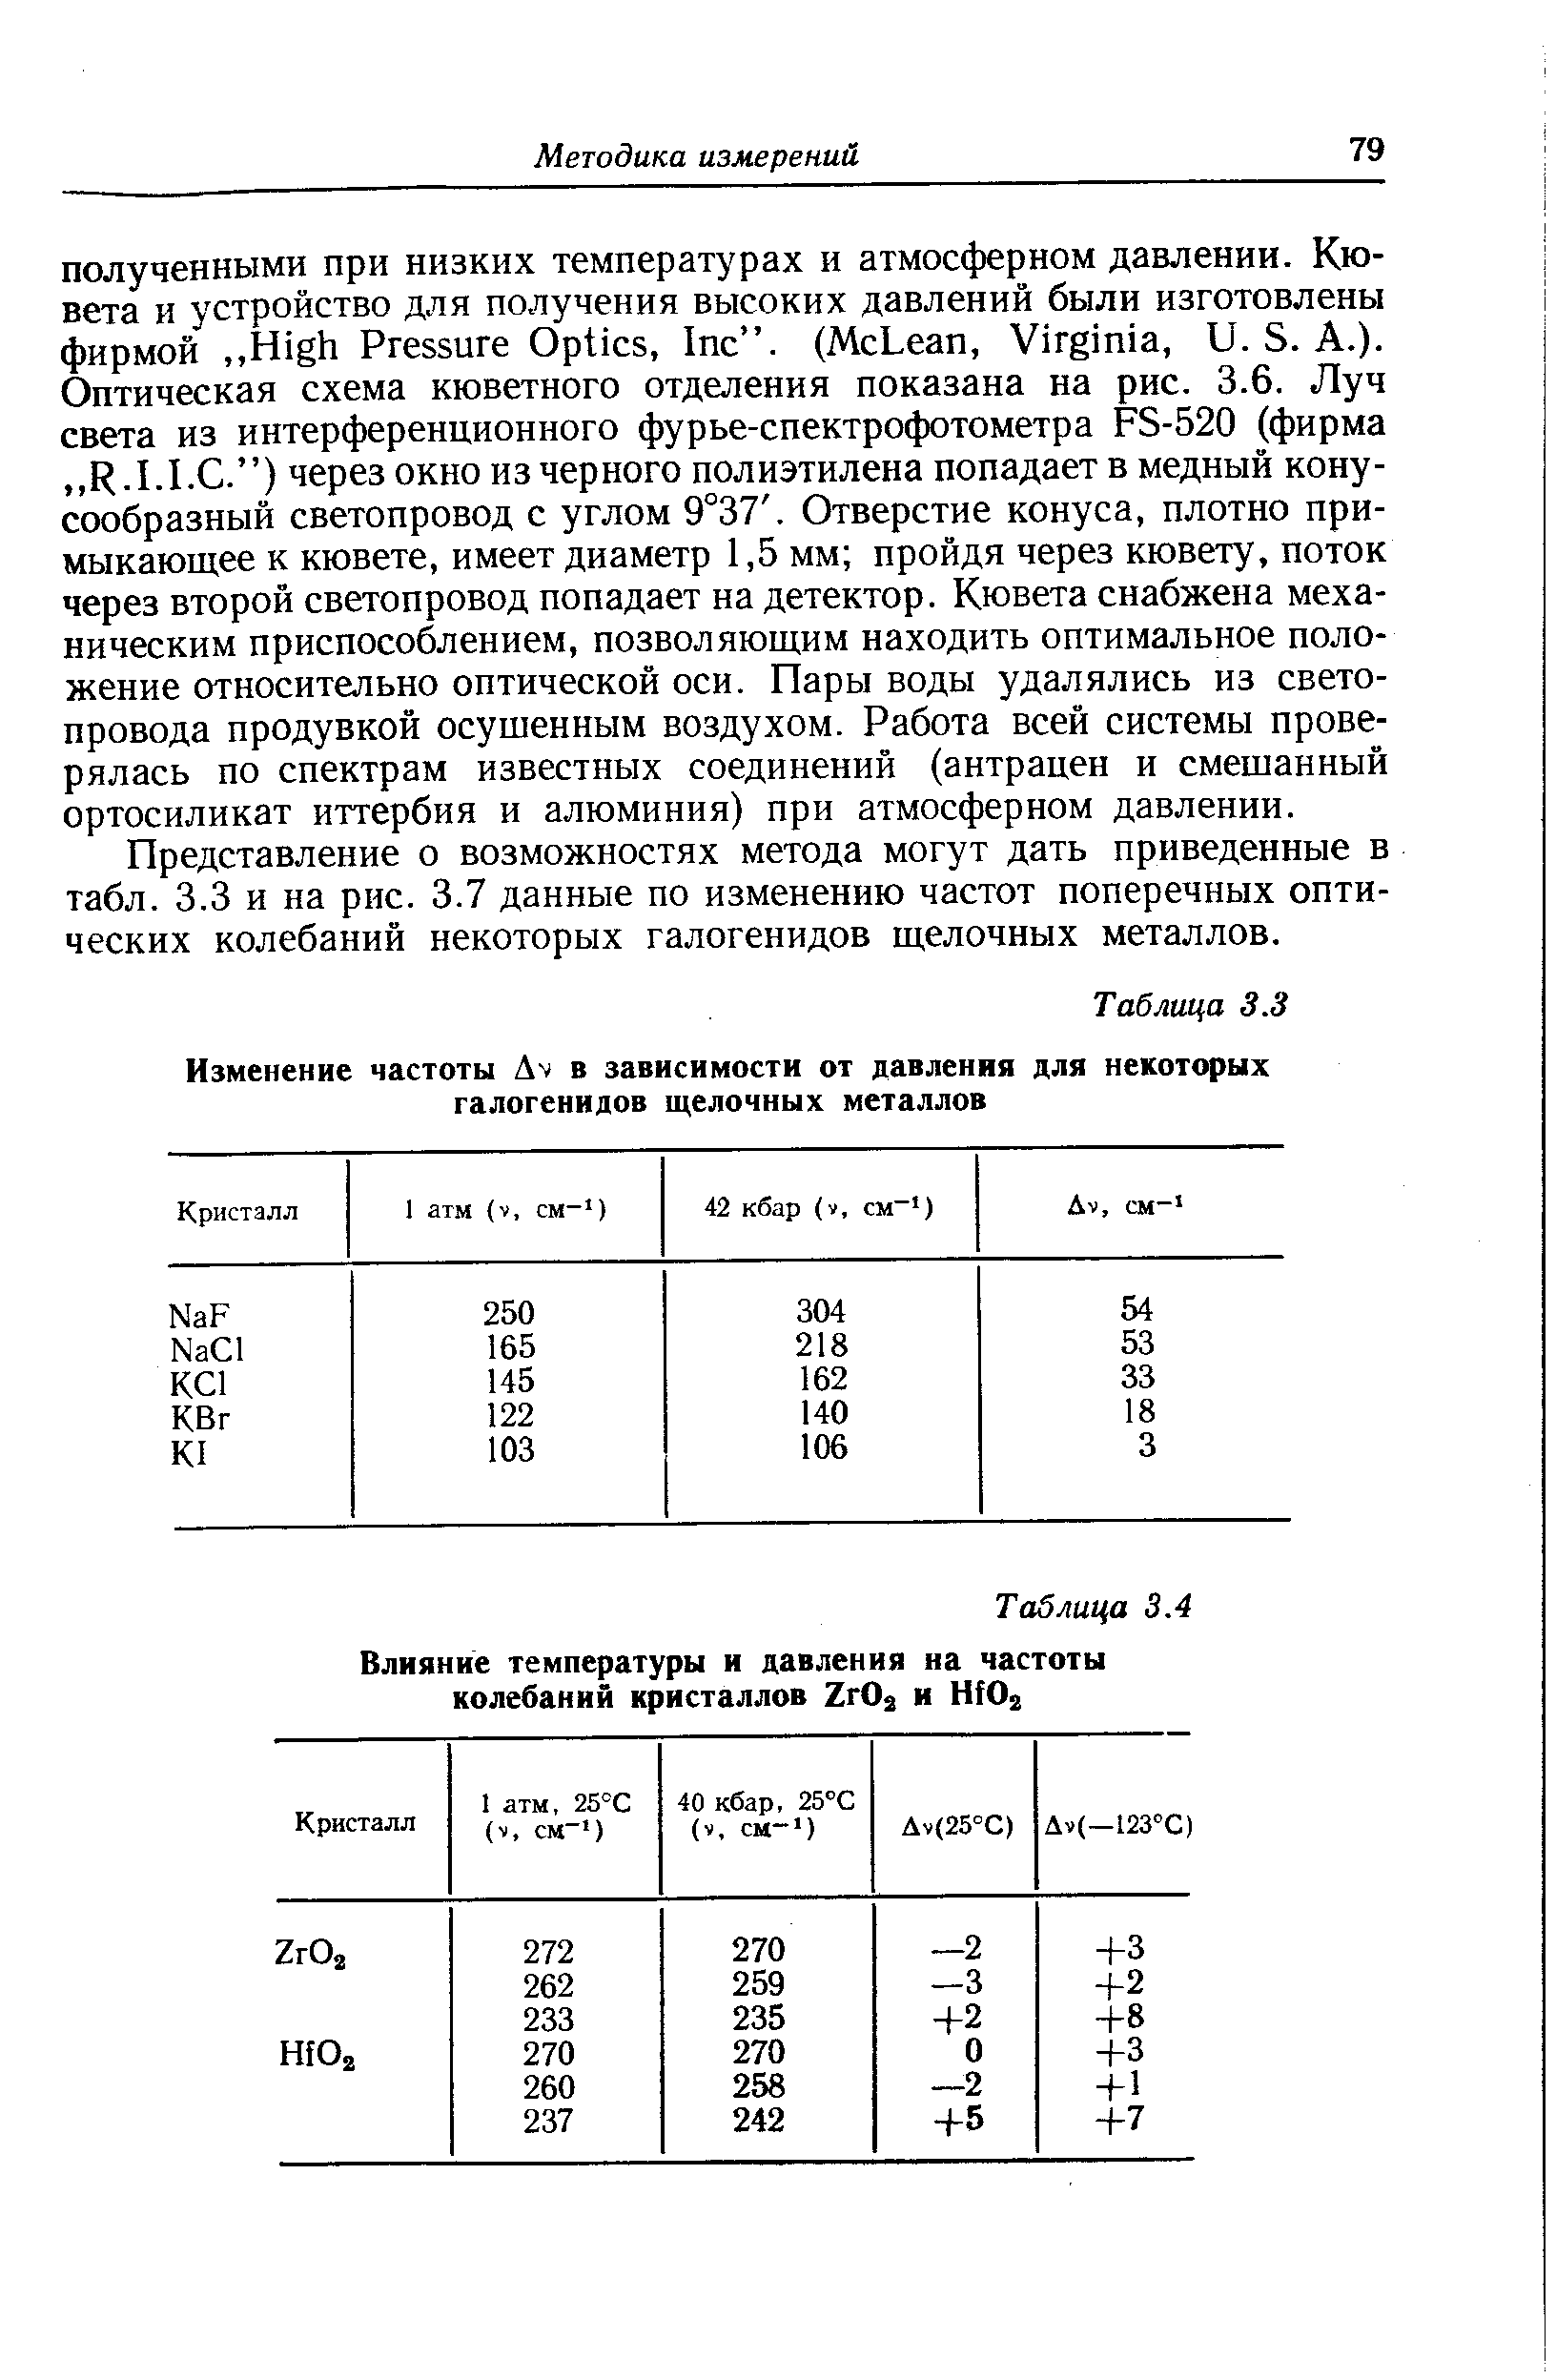 Представление о возможностях метода могут дать приведенные в табл. 3.3 и на рис. 3.7 данные по изменению частот поперечных оптических колебаний некоторых галогенидов щелочных металлов.